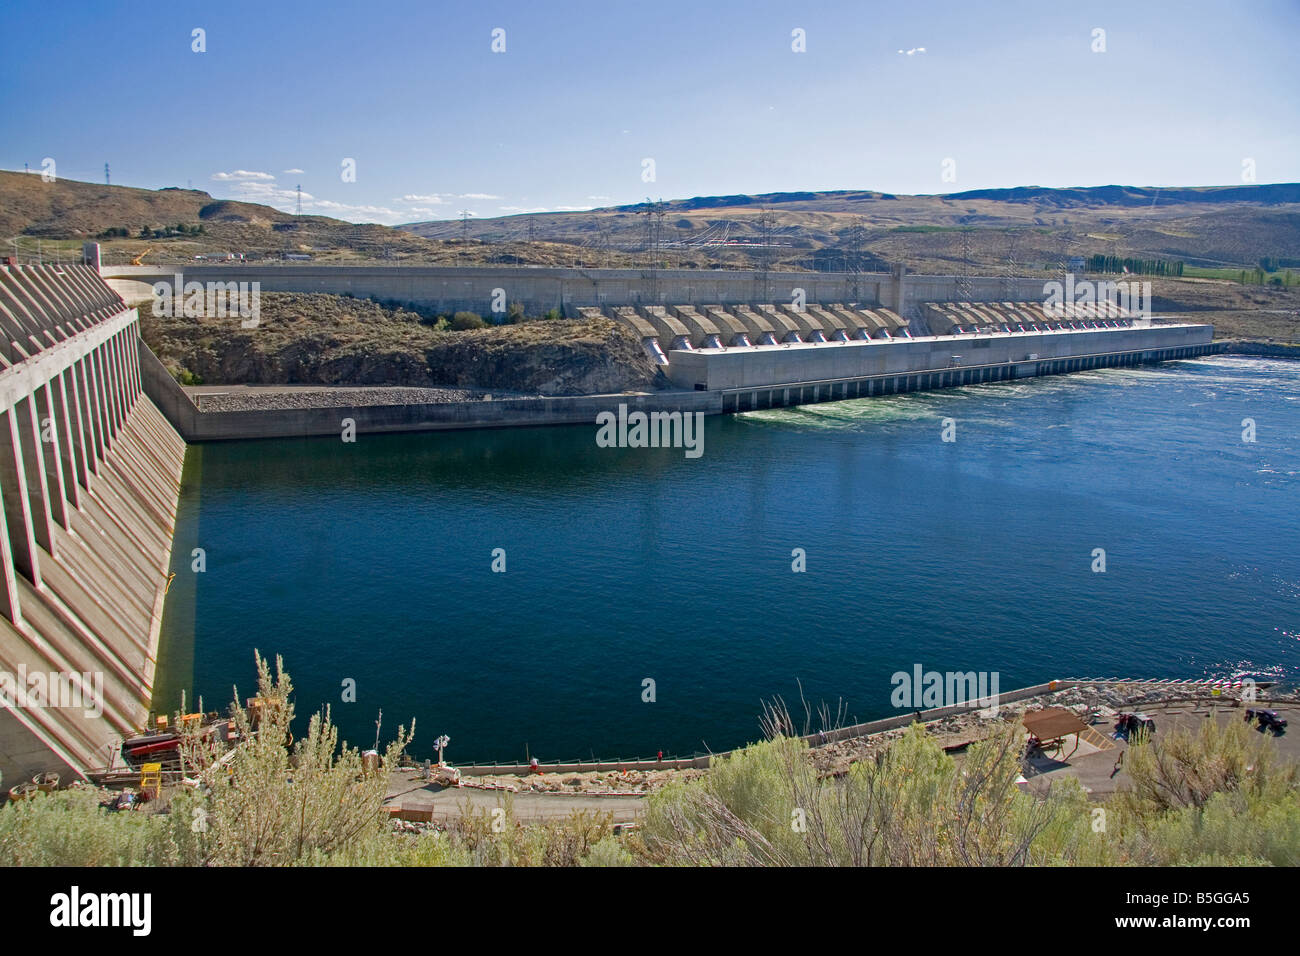 Le chef Joseph barrage est un barrage hydroélectrique sur le fleuve Columbia à Washington Banque D'Images